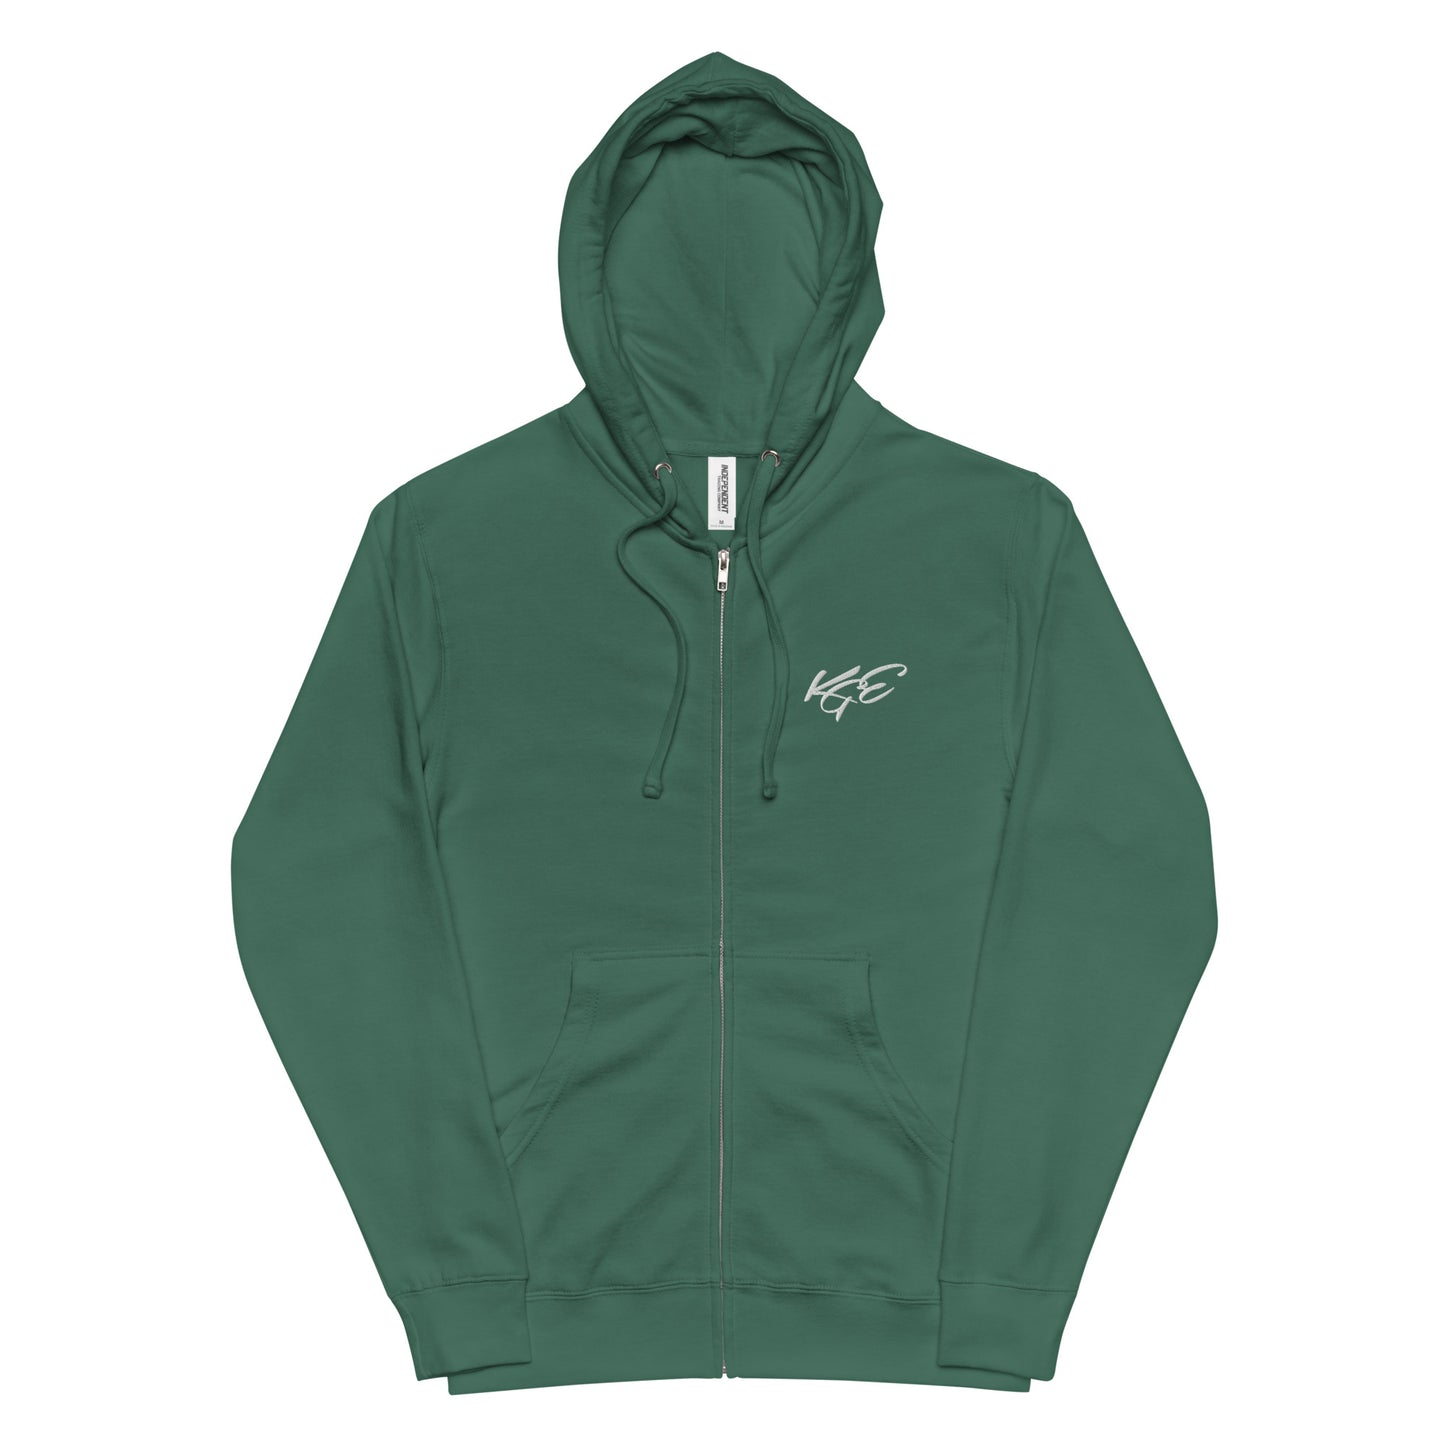 (New) #Nexxtpush Fargo independent Unisex fleece zip up hoodie